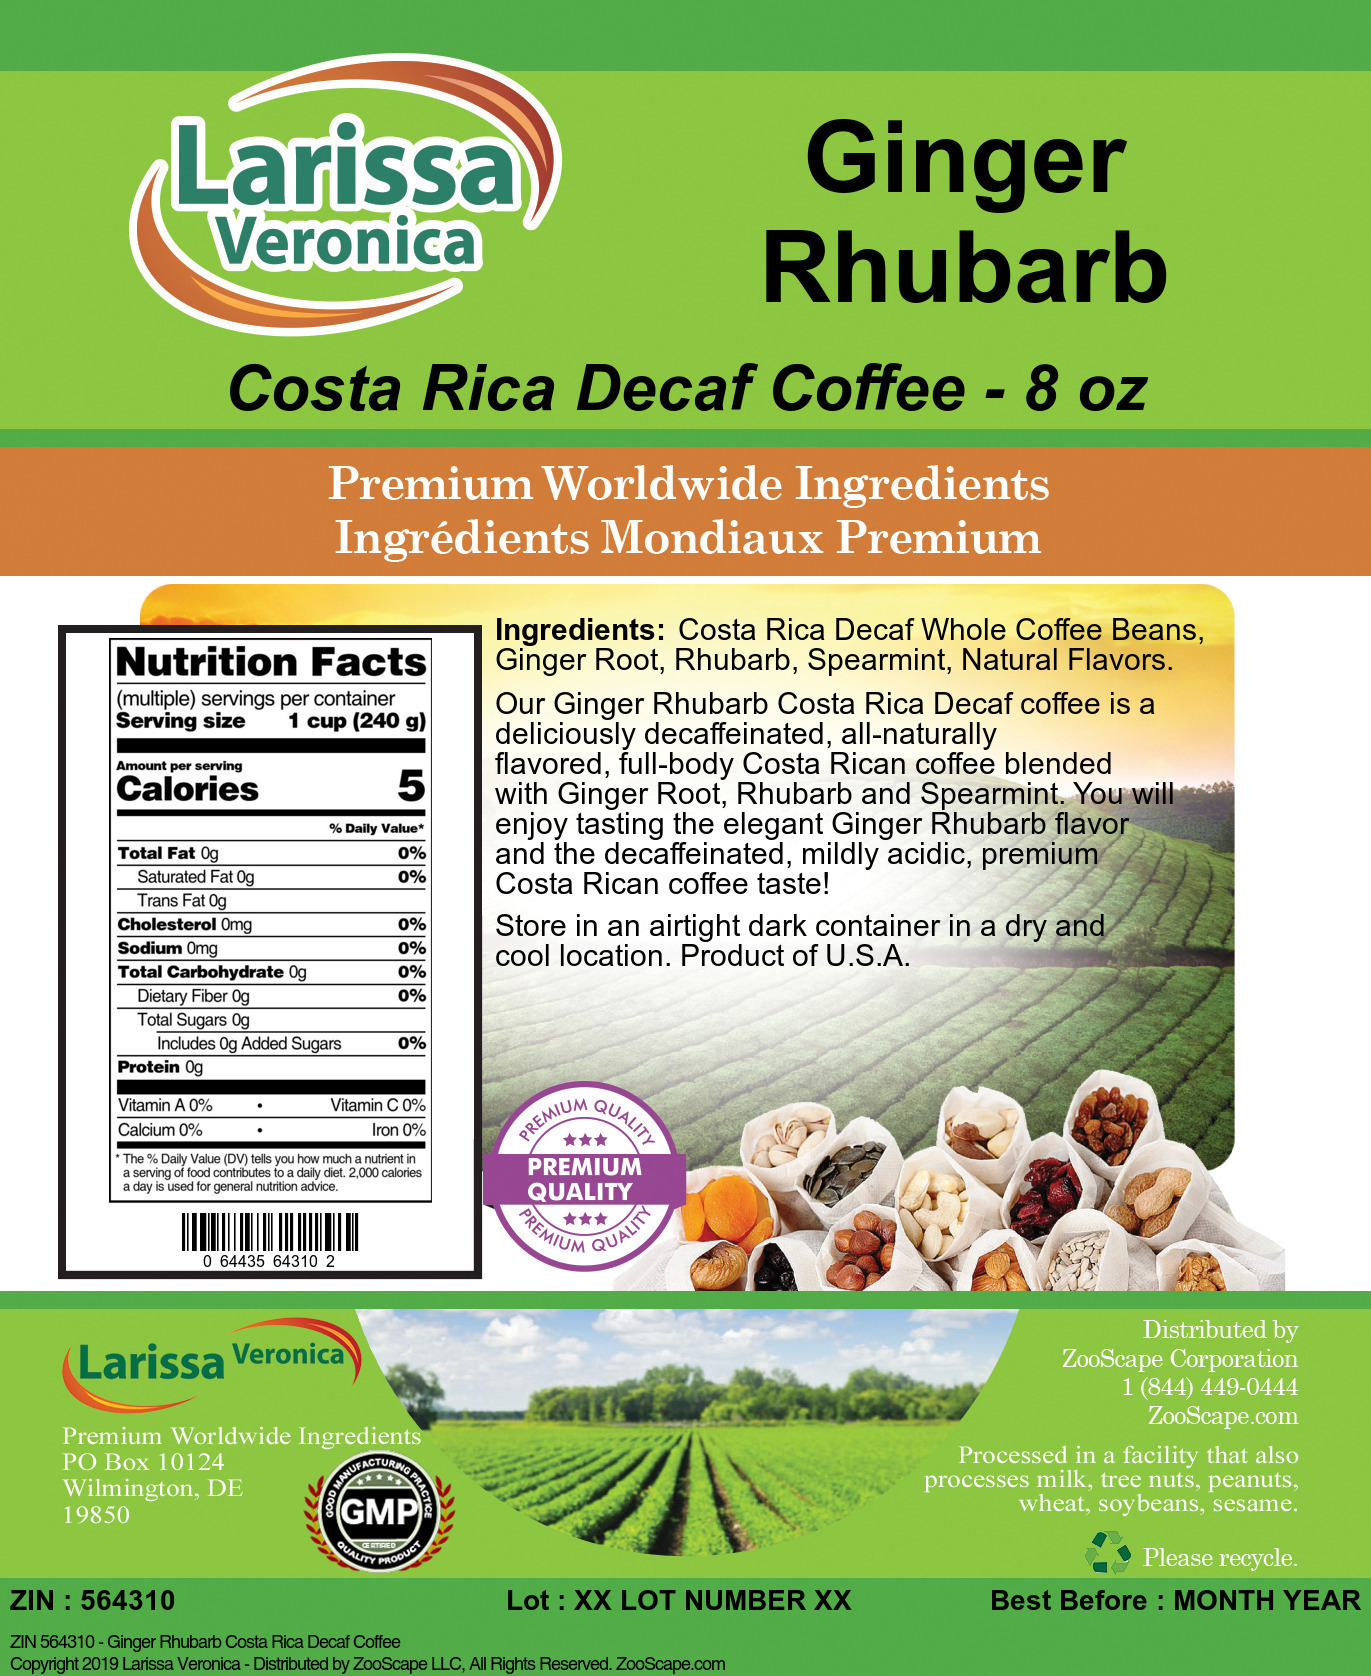 Ginger Rhubarb Costa Rica Decaf Coffee - Label